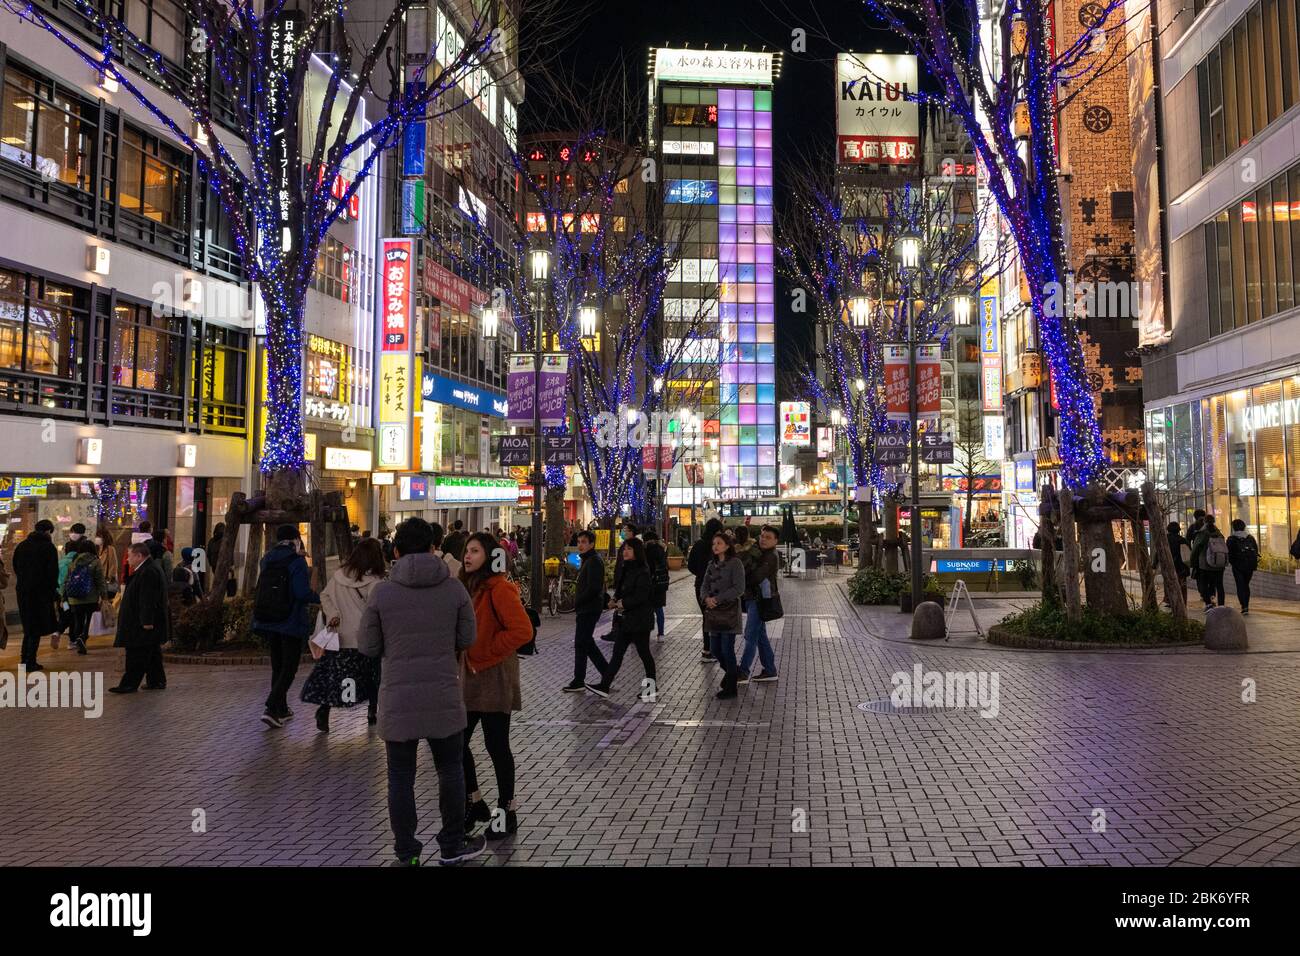 Shinjuku Streets at Night, Tokyo, Japan Stock Photo